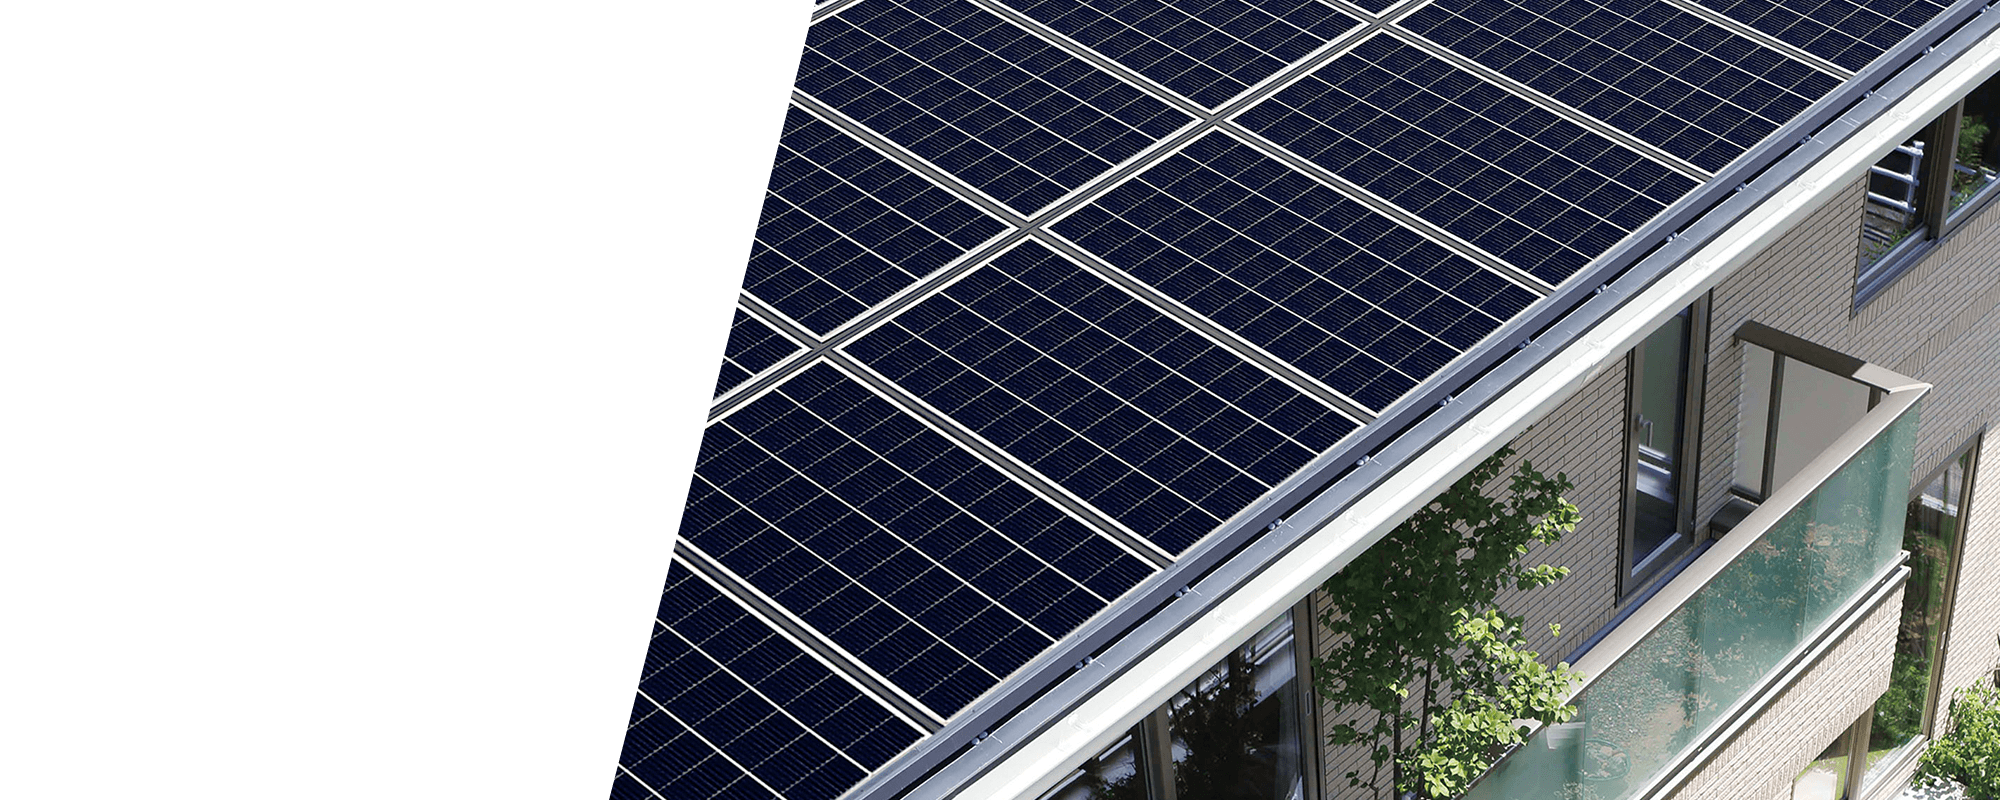 株式会社一条工務店と中部電力ミライズがご提案する、快適でお得な「カナエルソーラー」。初期費用実質0円で太陽光発電と蓄電池が導入できます。